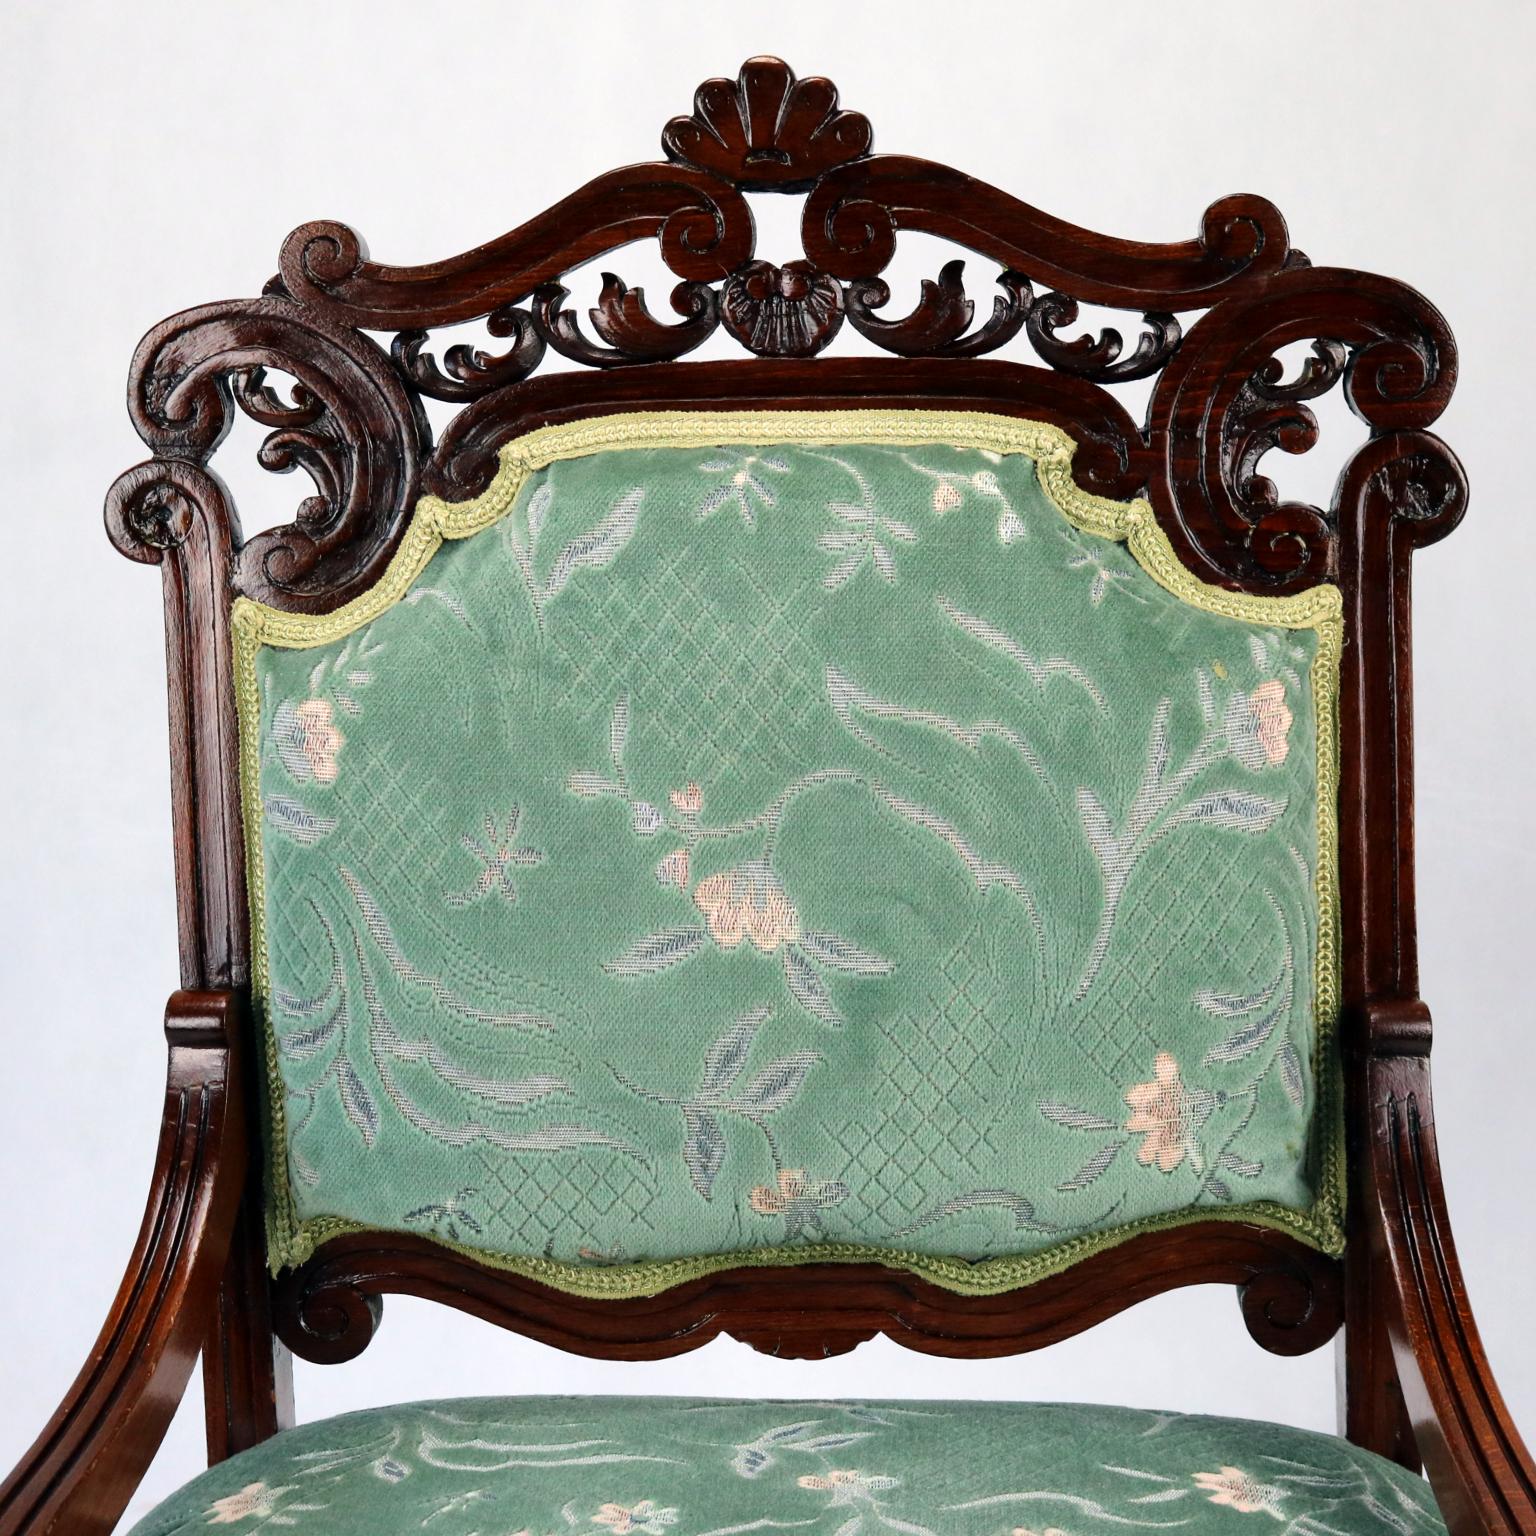 Geschnitzte Sessel aus Buche, spätes 19. Jahrhundert (Buchenholz)